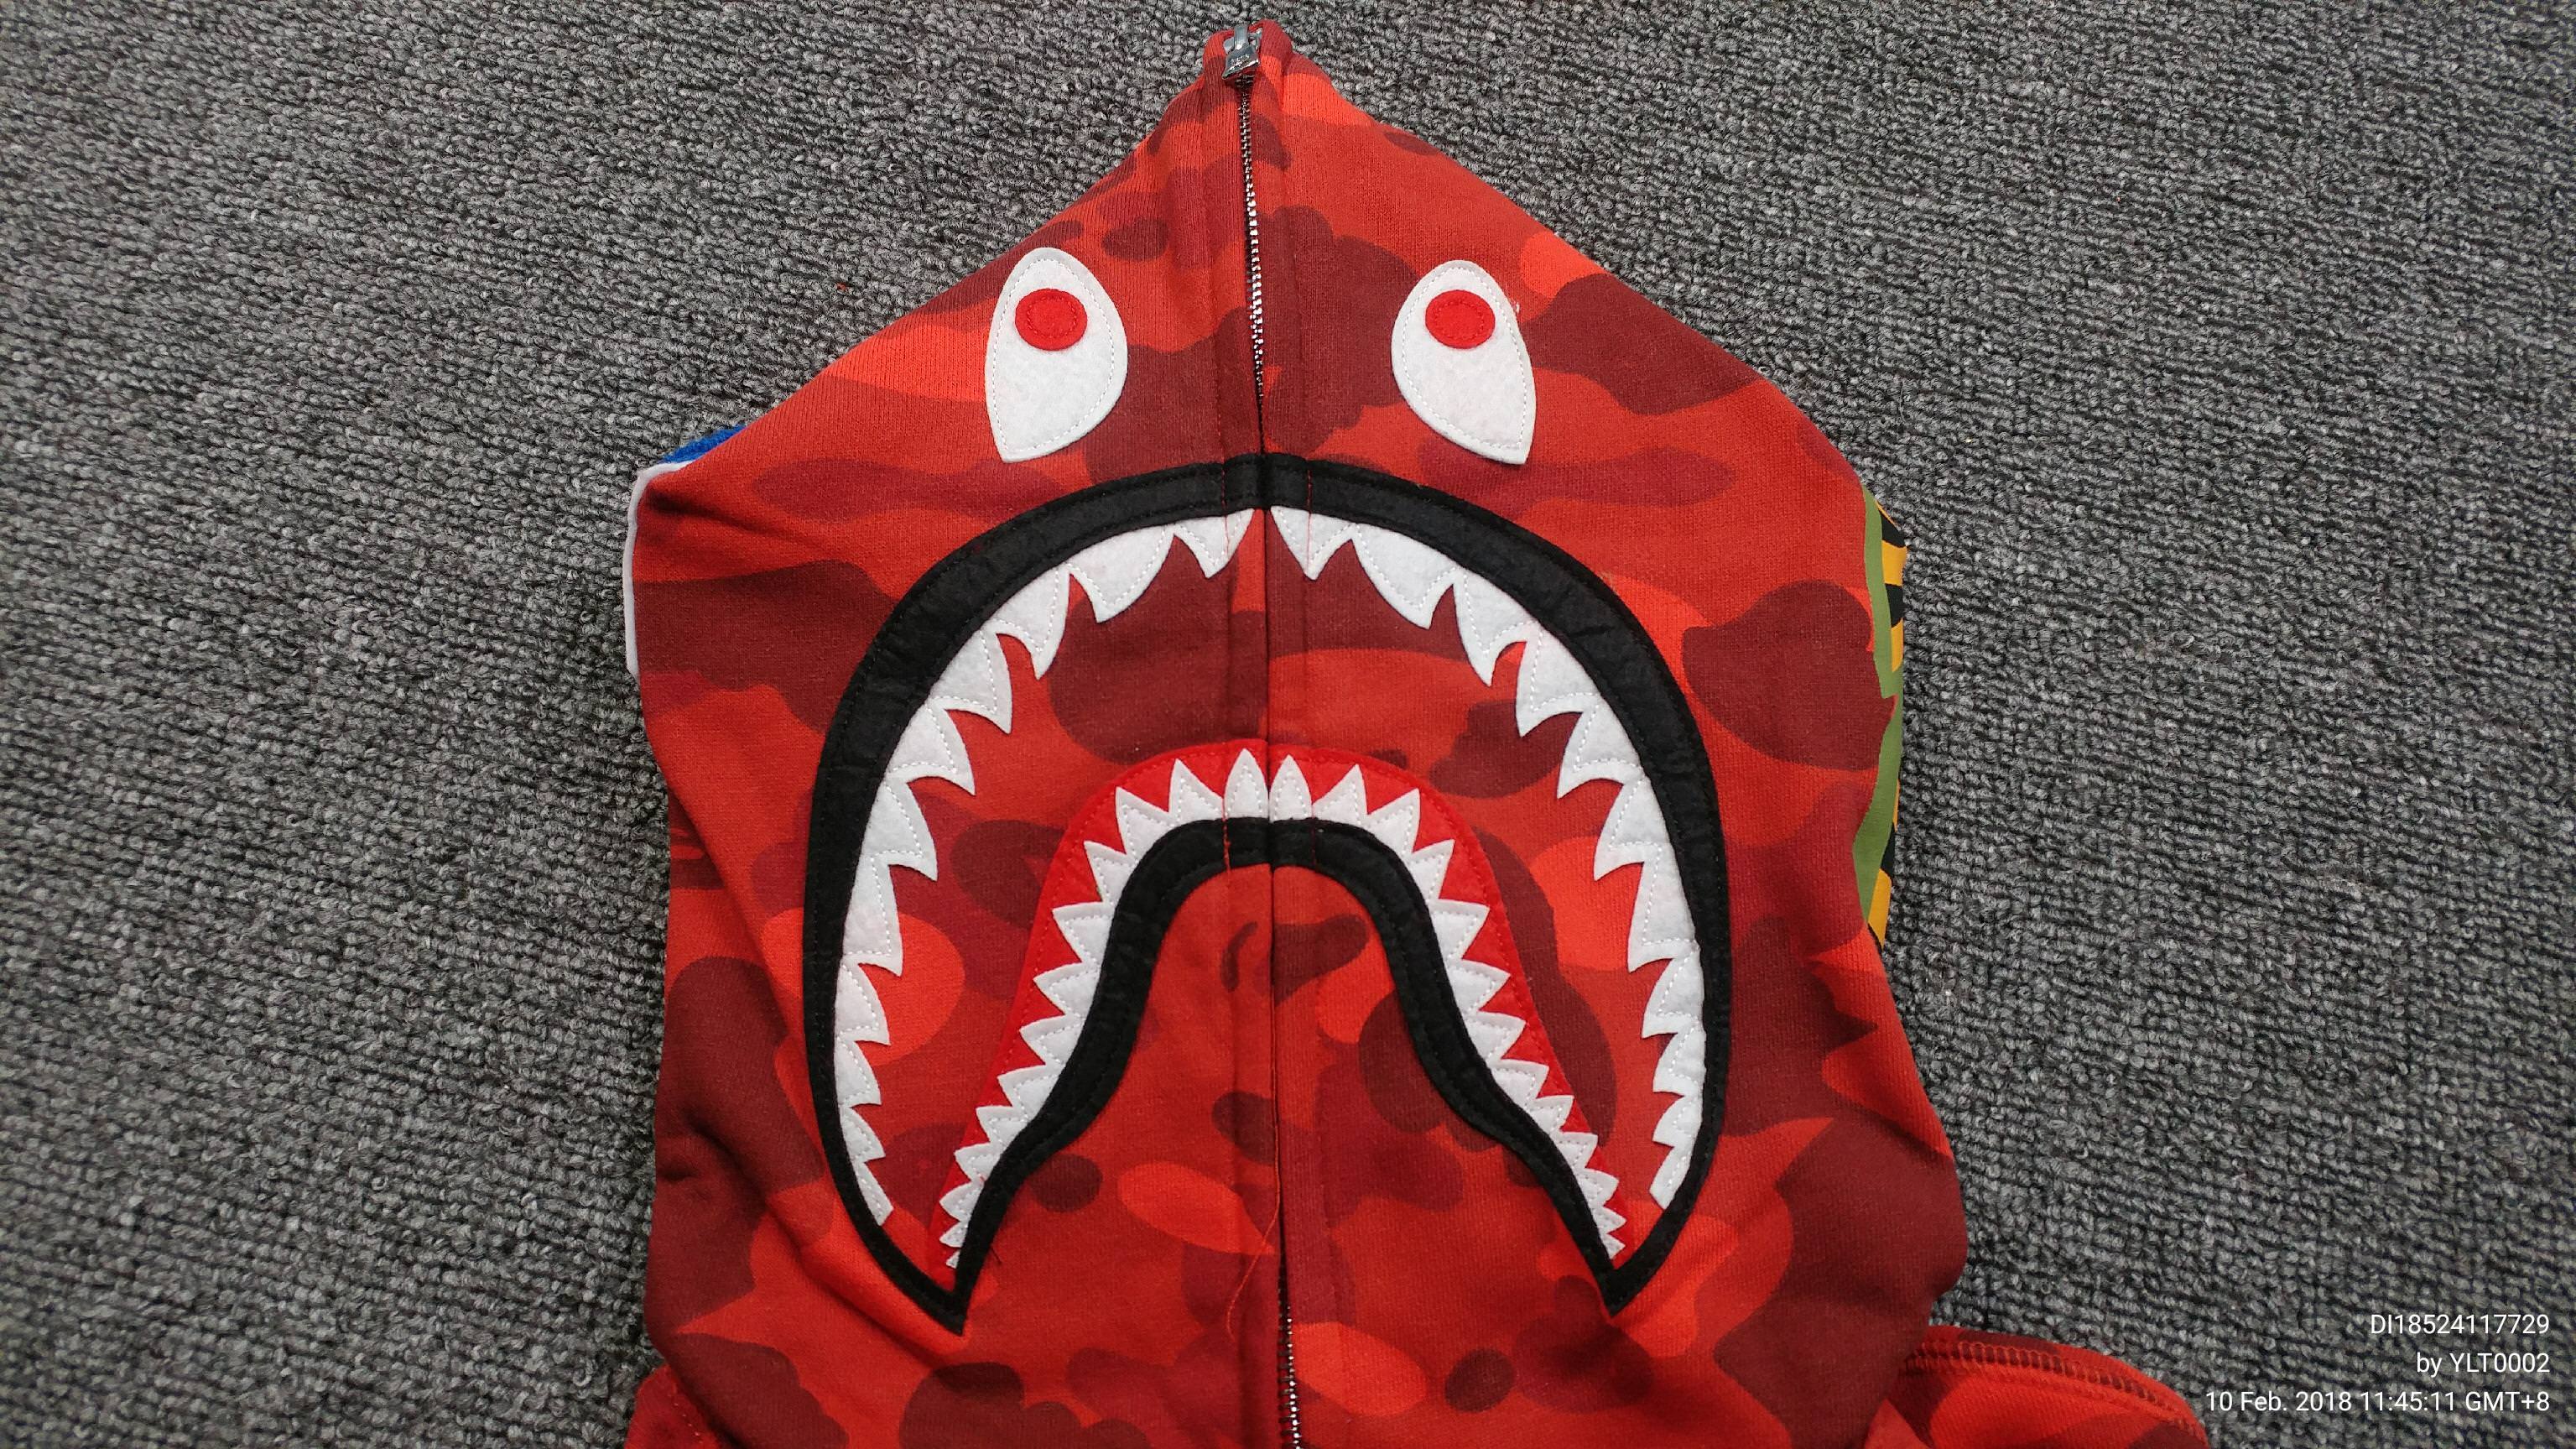 Red BAPE Shark Logo - KingShark's Red Bape Shark Hoodie - Album on Imgur